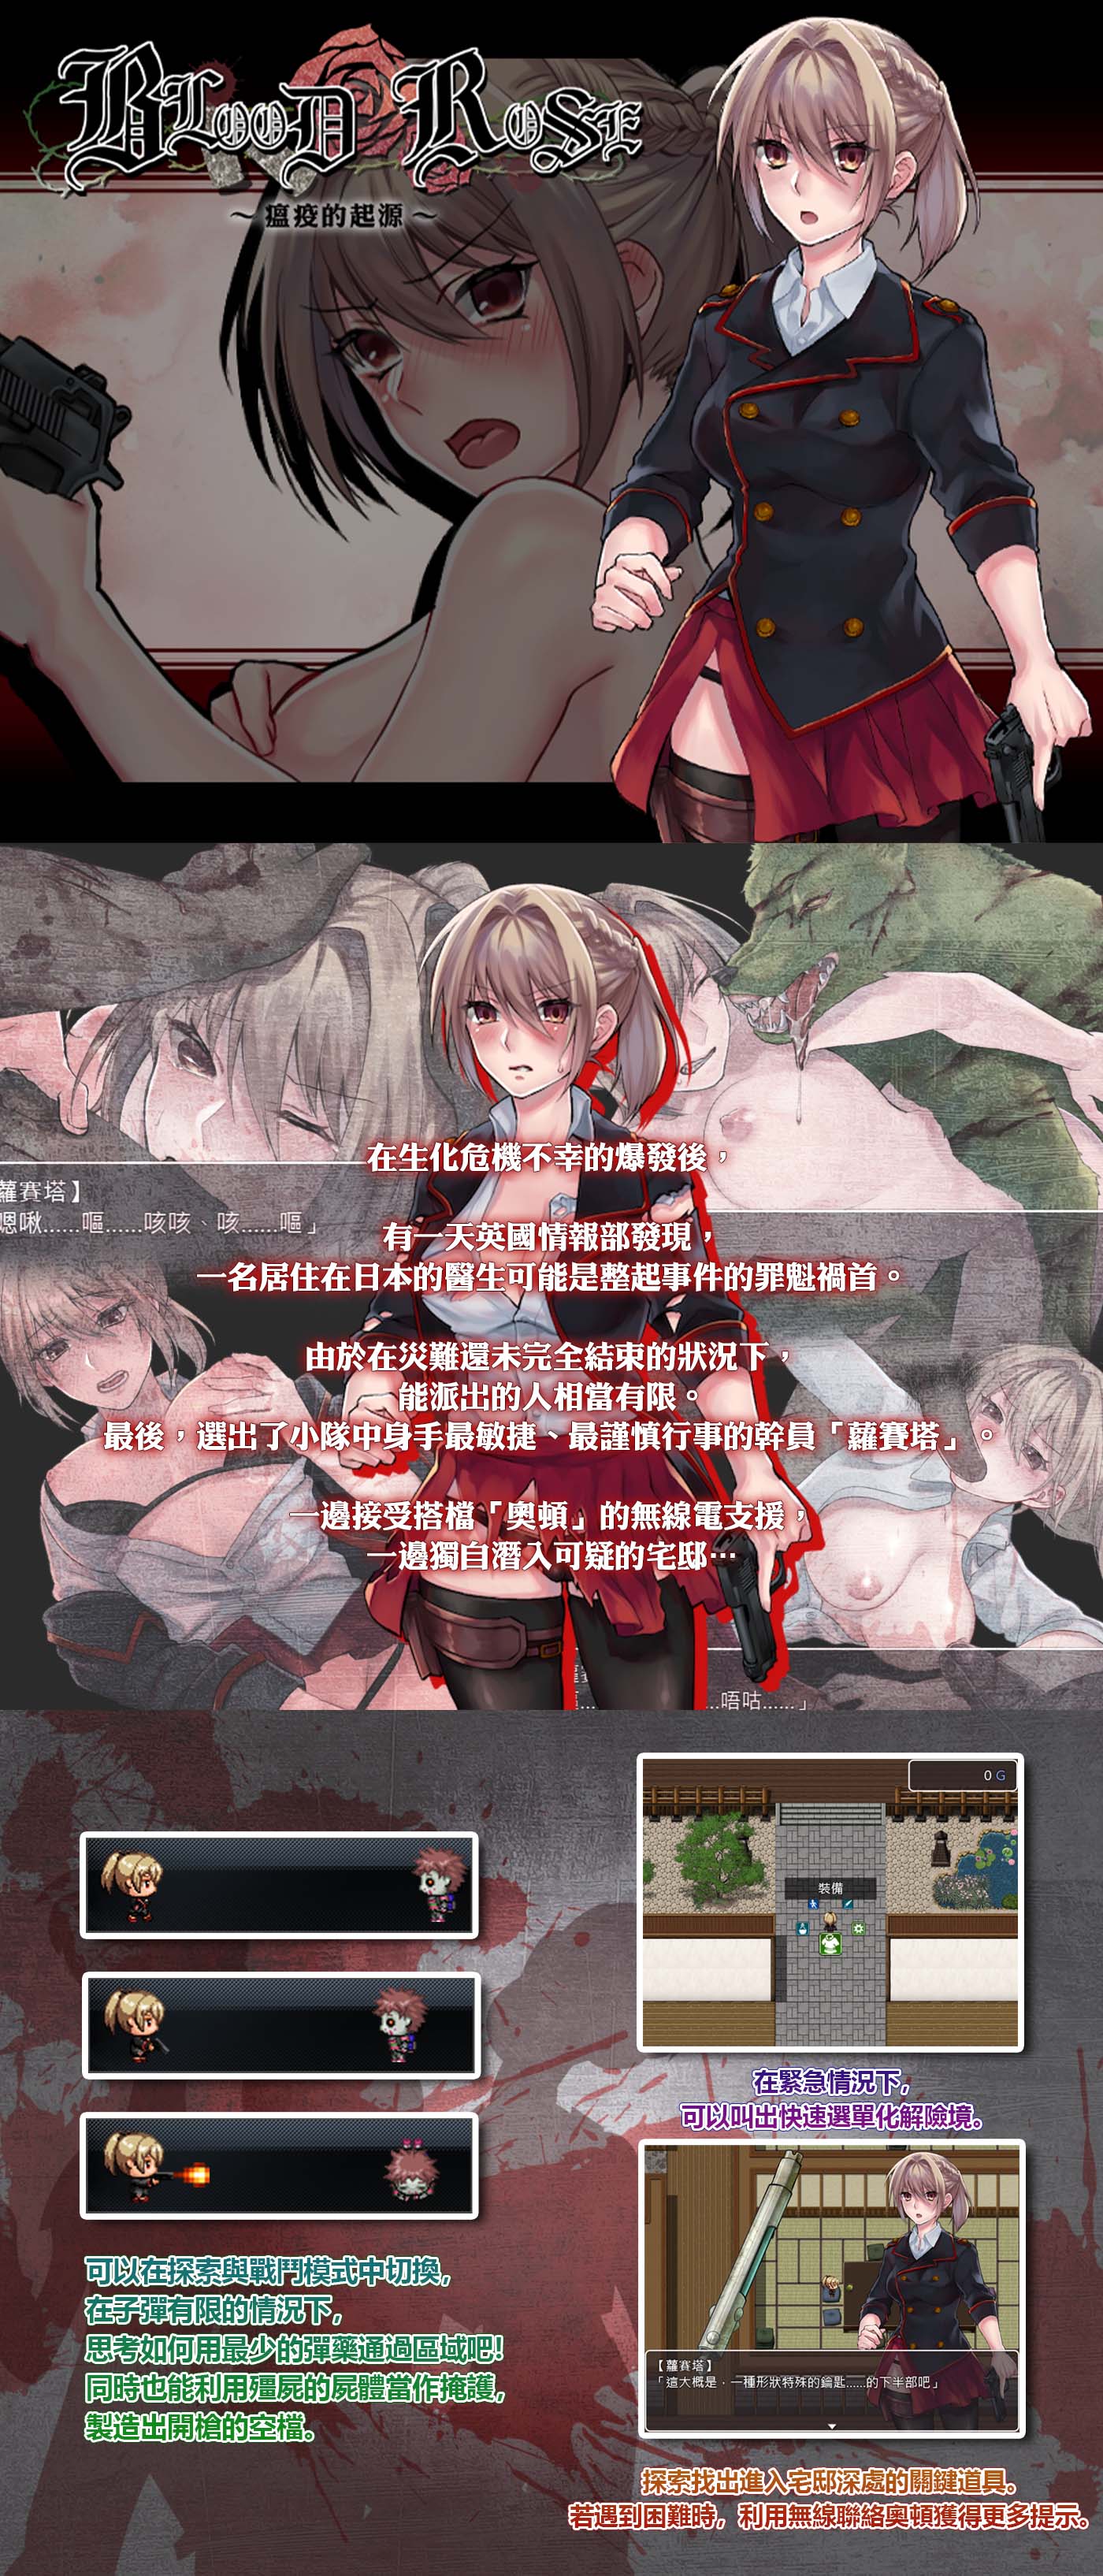 [NTR/丧尸/异种奸/无修] Blood Rose~瘟疫的起源~ [官中/度盘] RPG 第7张